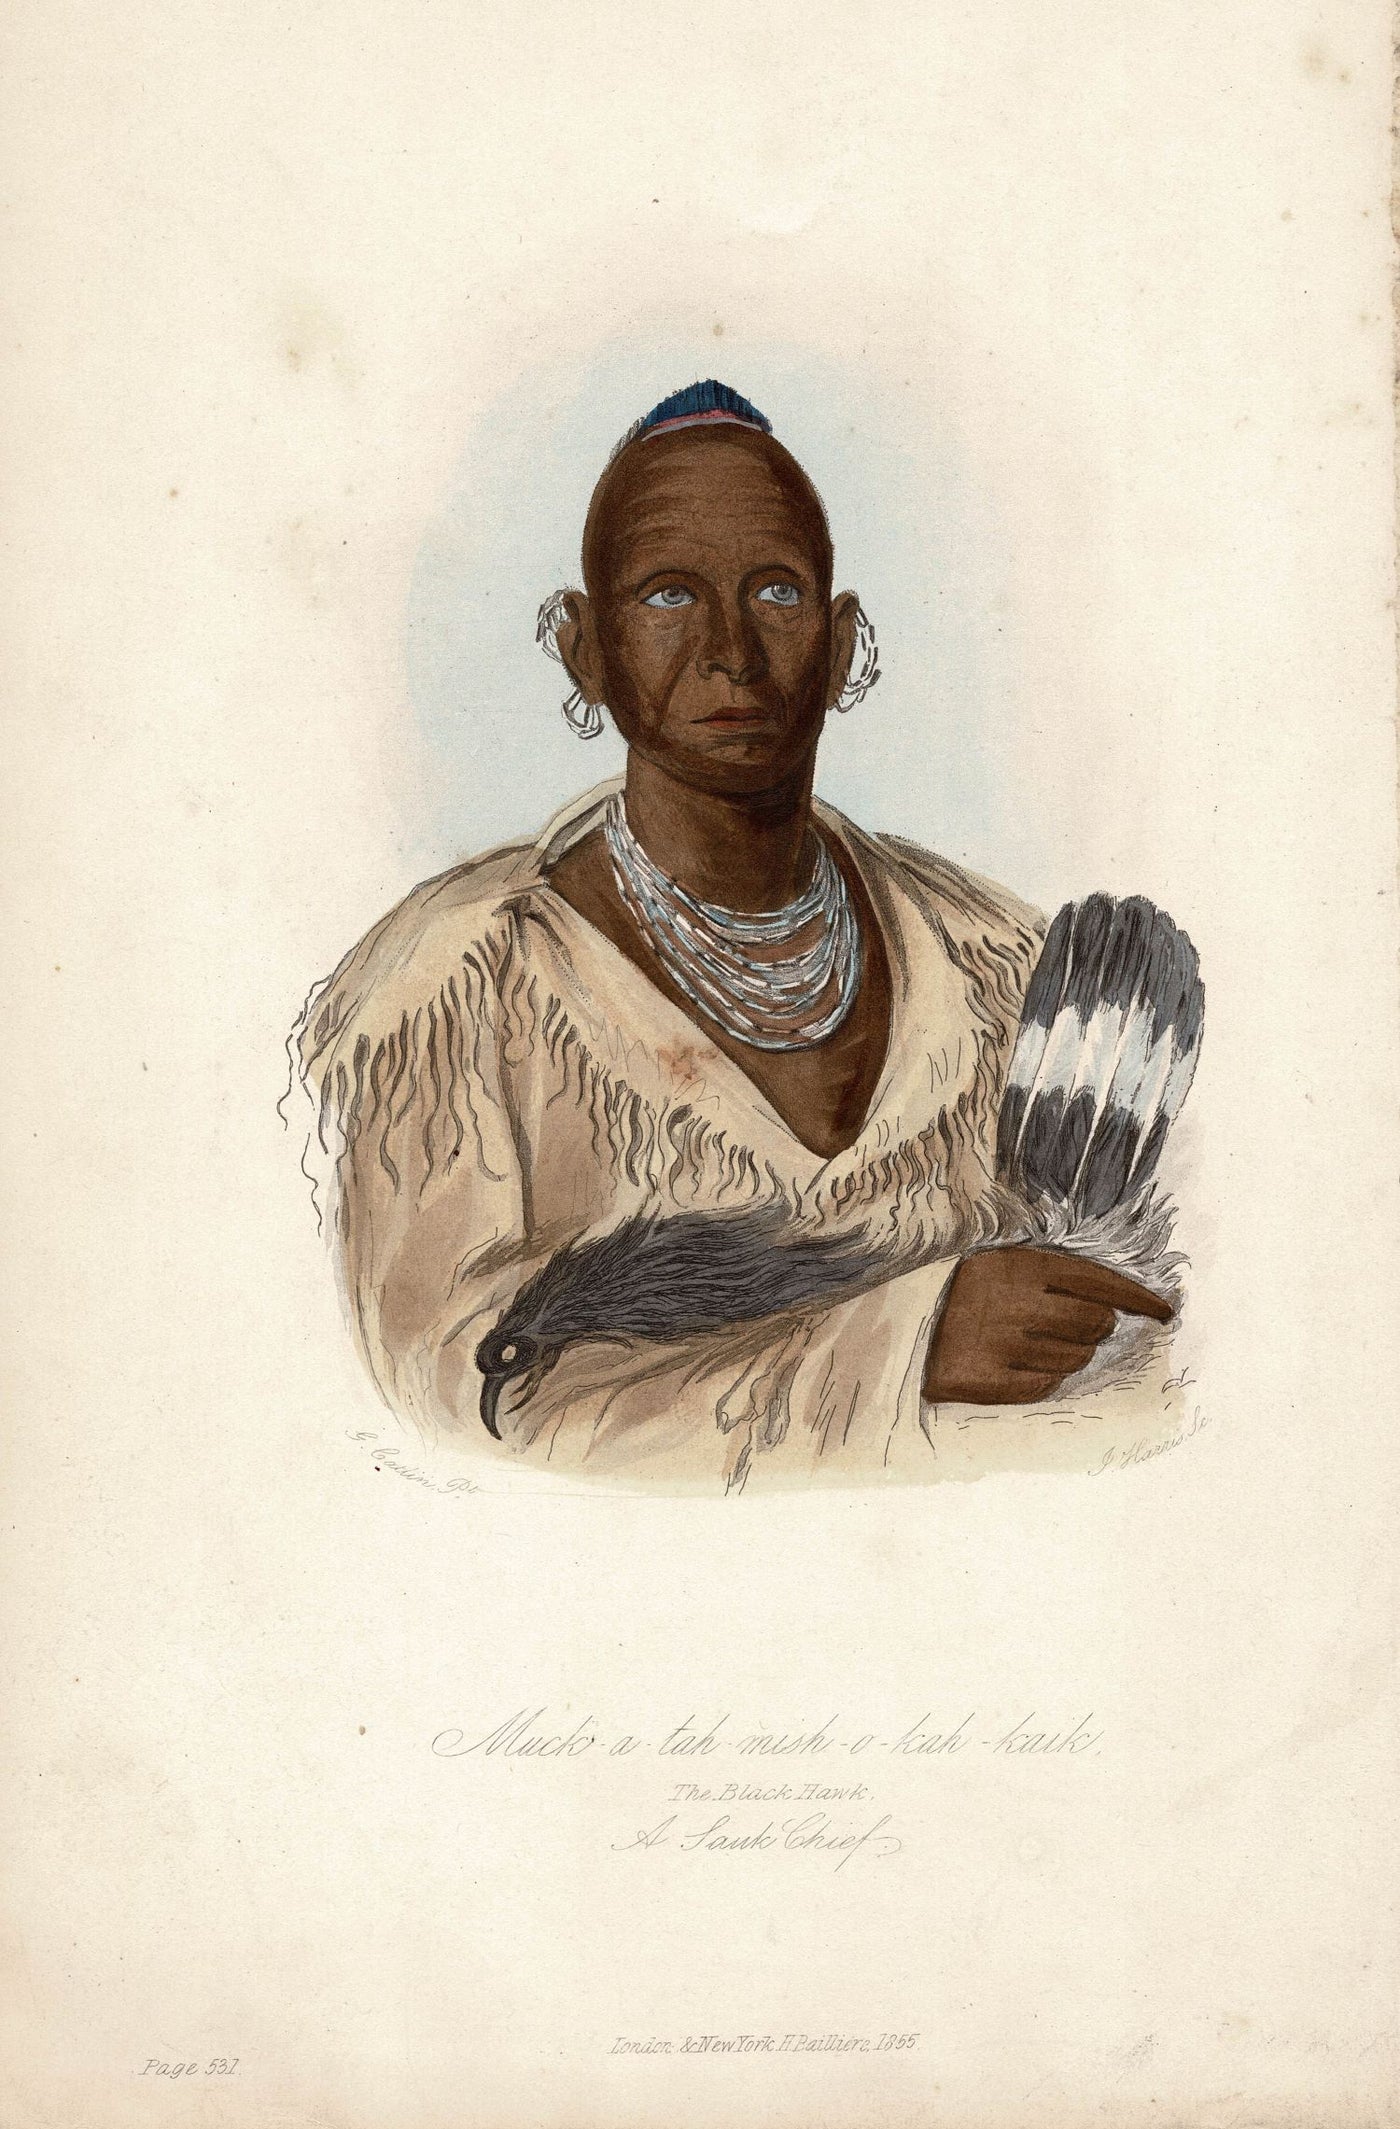 Black Hawk a Sauk Chief portrait antique print published 1855